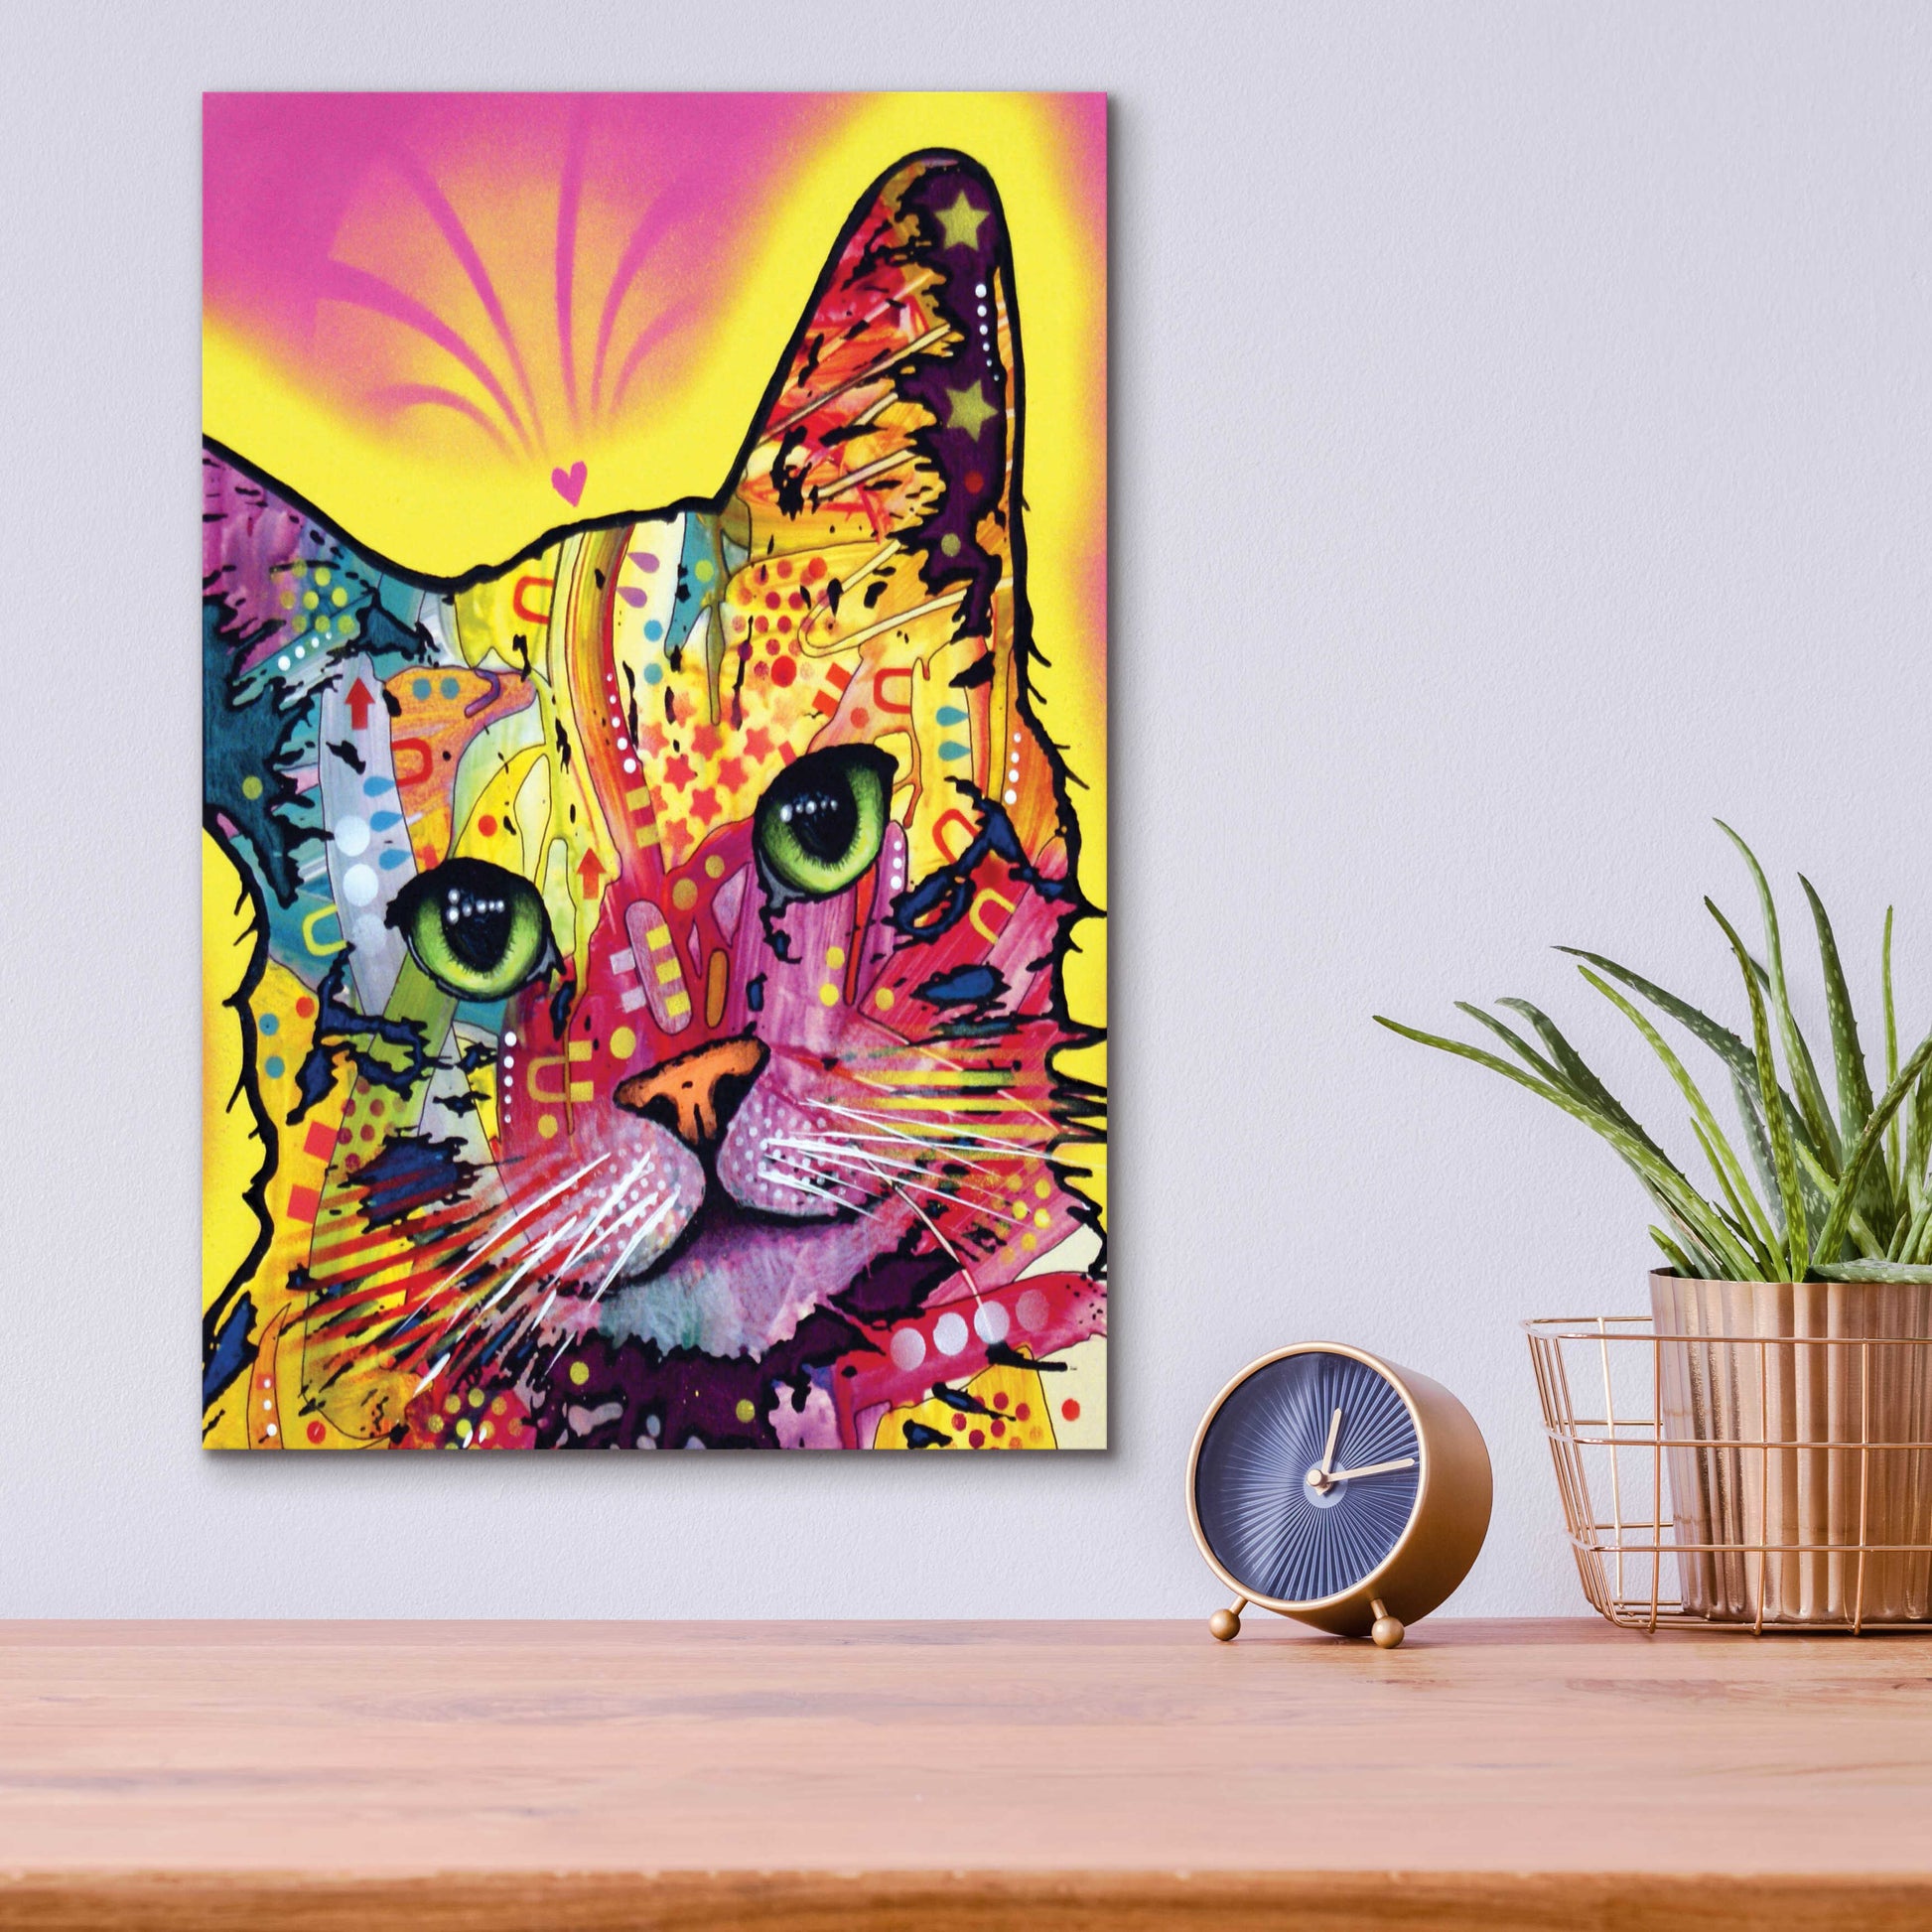 Epic Art 'Tilt Cat I' by Dean Russo, Acrylic Glass Wall Art,12x16